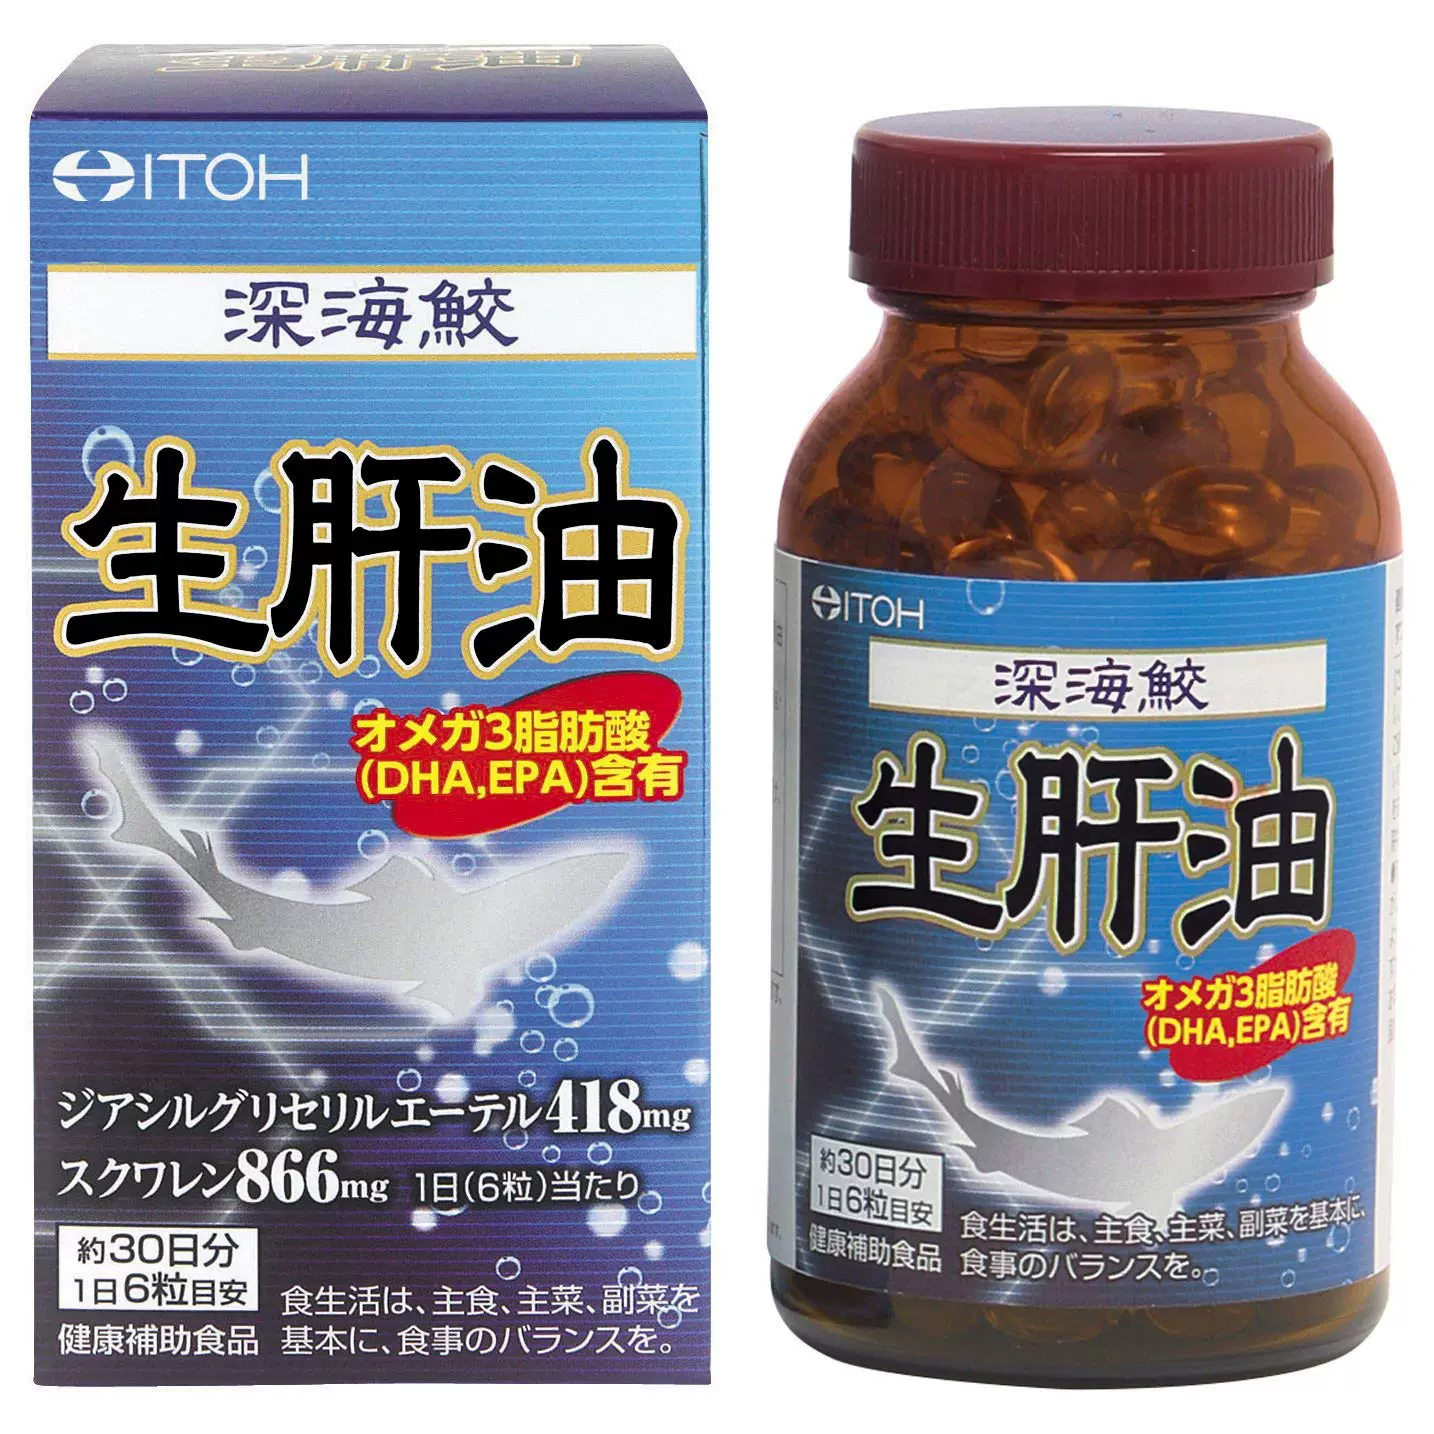 日本深海鲛肝油 新人首单立减十元 21年11月 淘宝海外